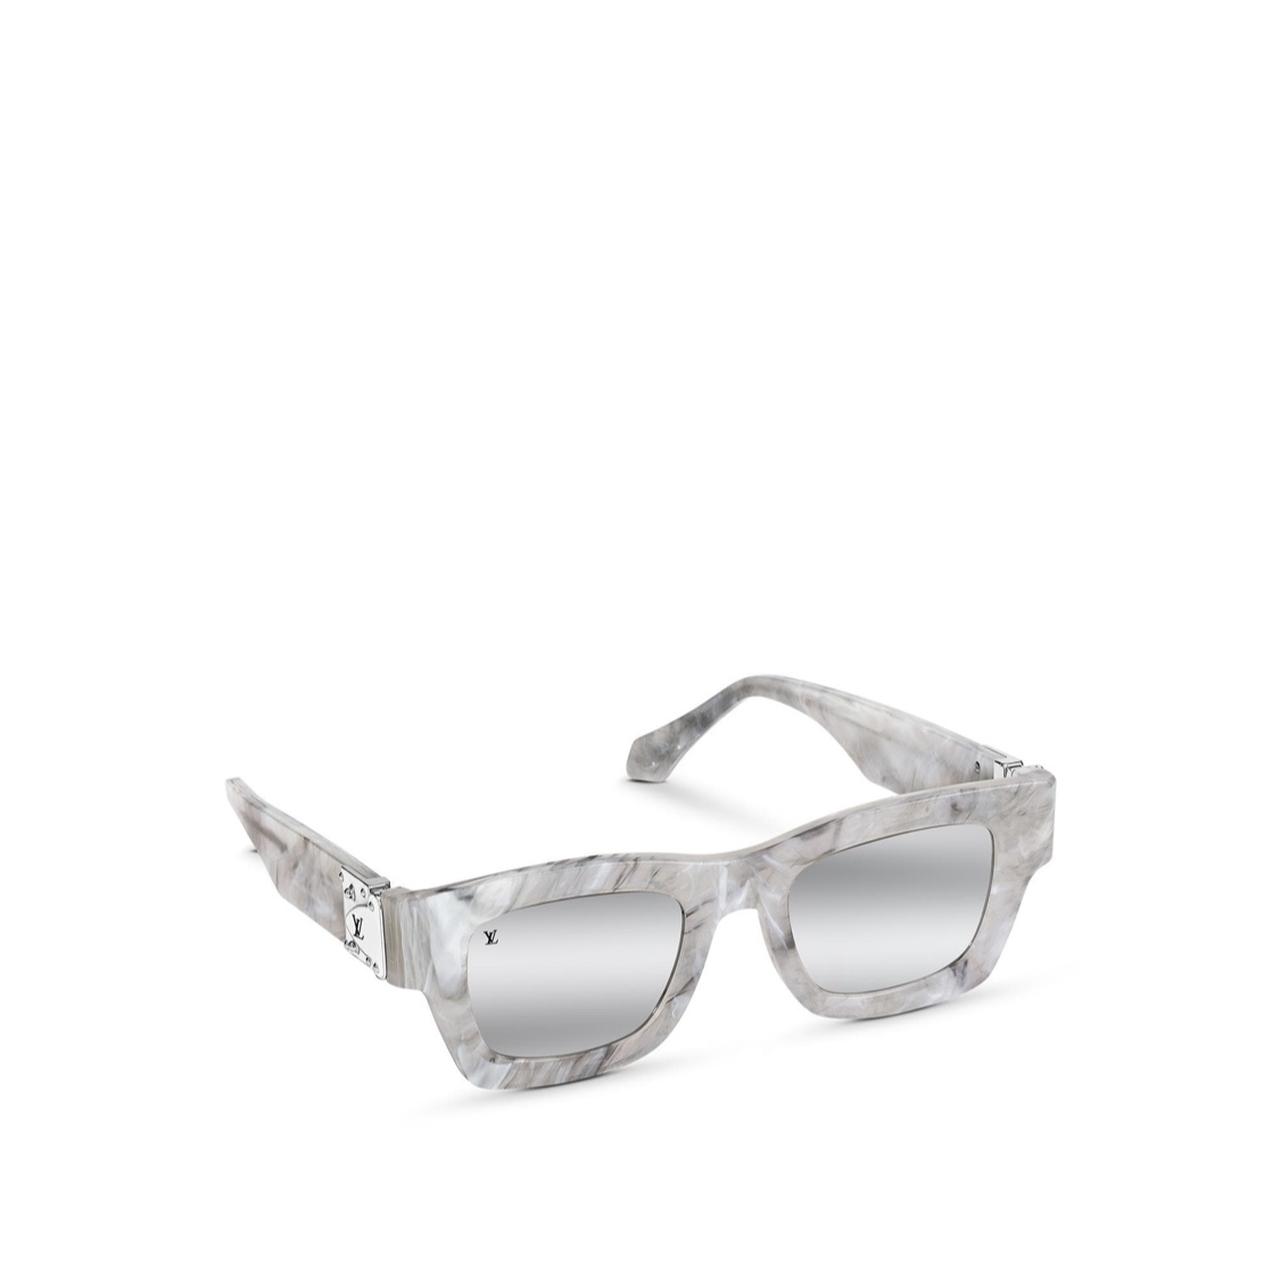 Louis Vuitton beaded pilot sunglasses 100% AUTHENTIC - Depop